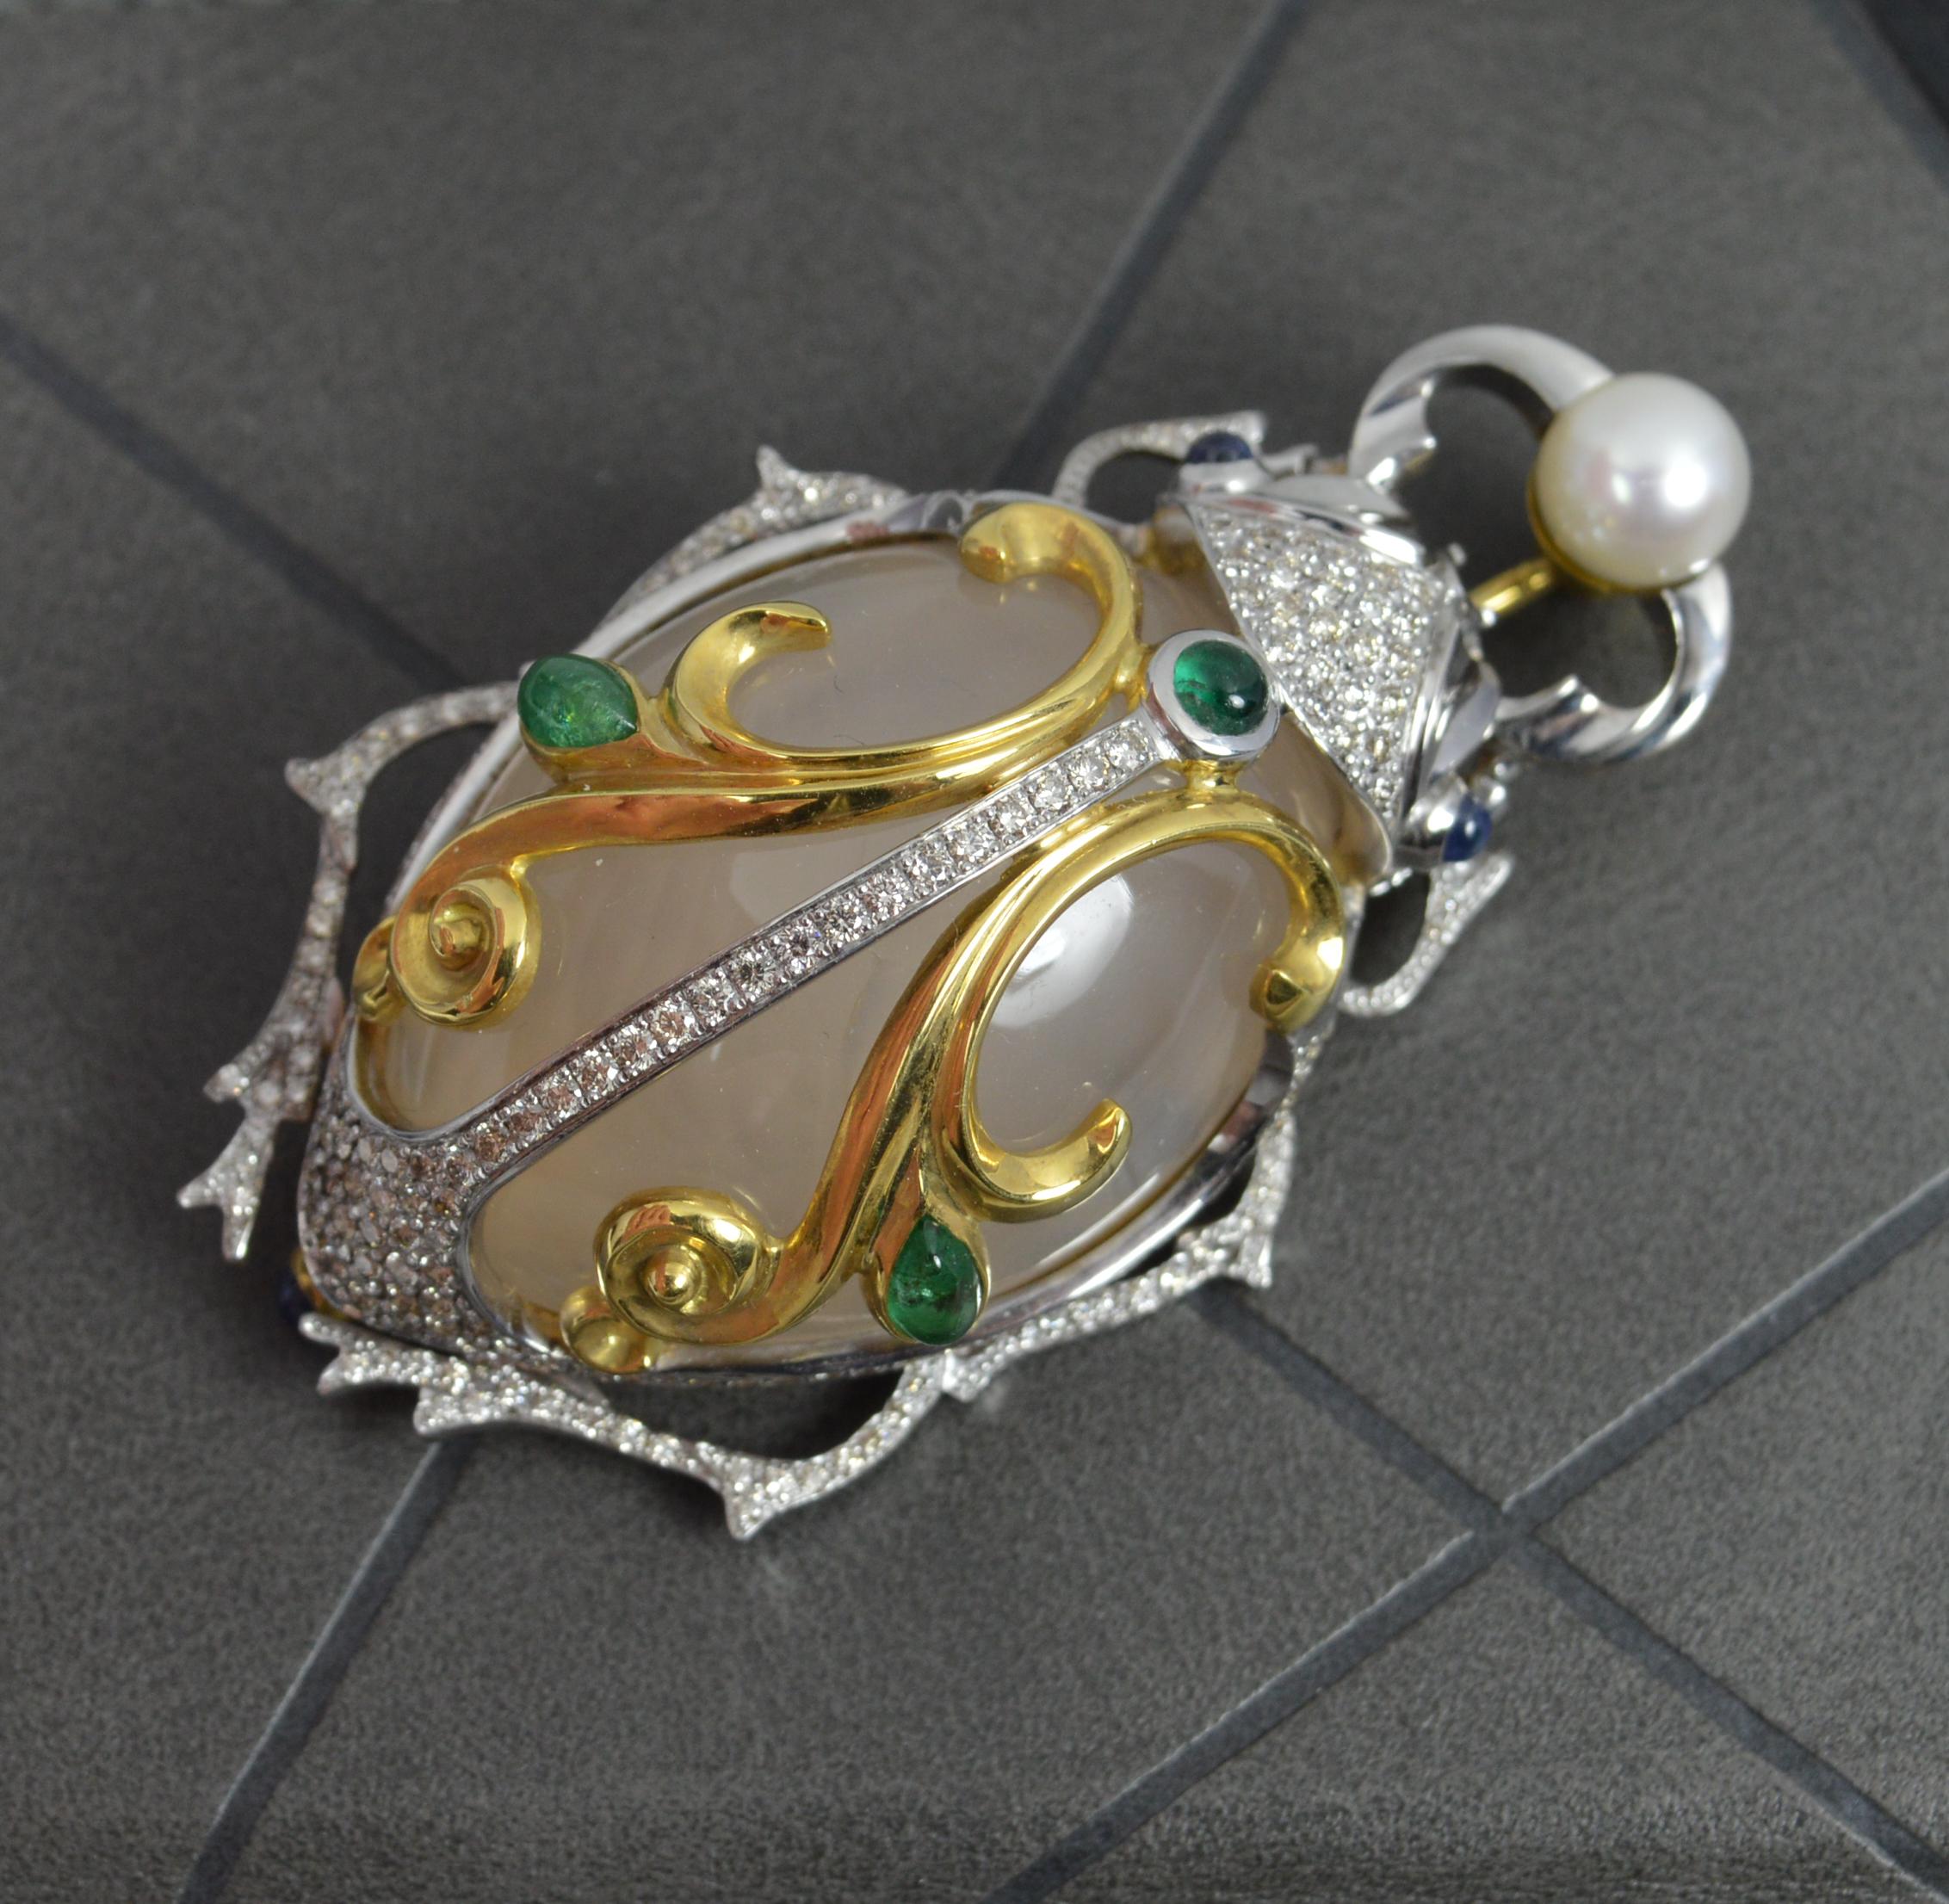 Unglaubliche BEETLE-Brosche, 18 Karat Gold Achat Saphir Smaragd Perle Diamant 44,7 g 2